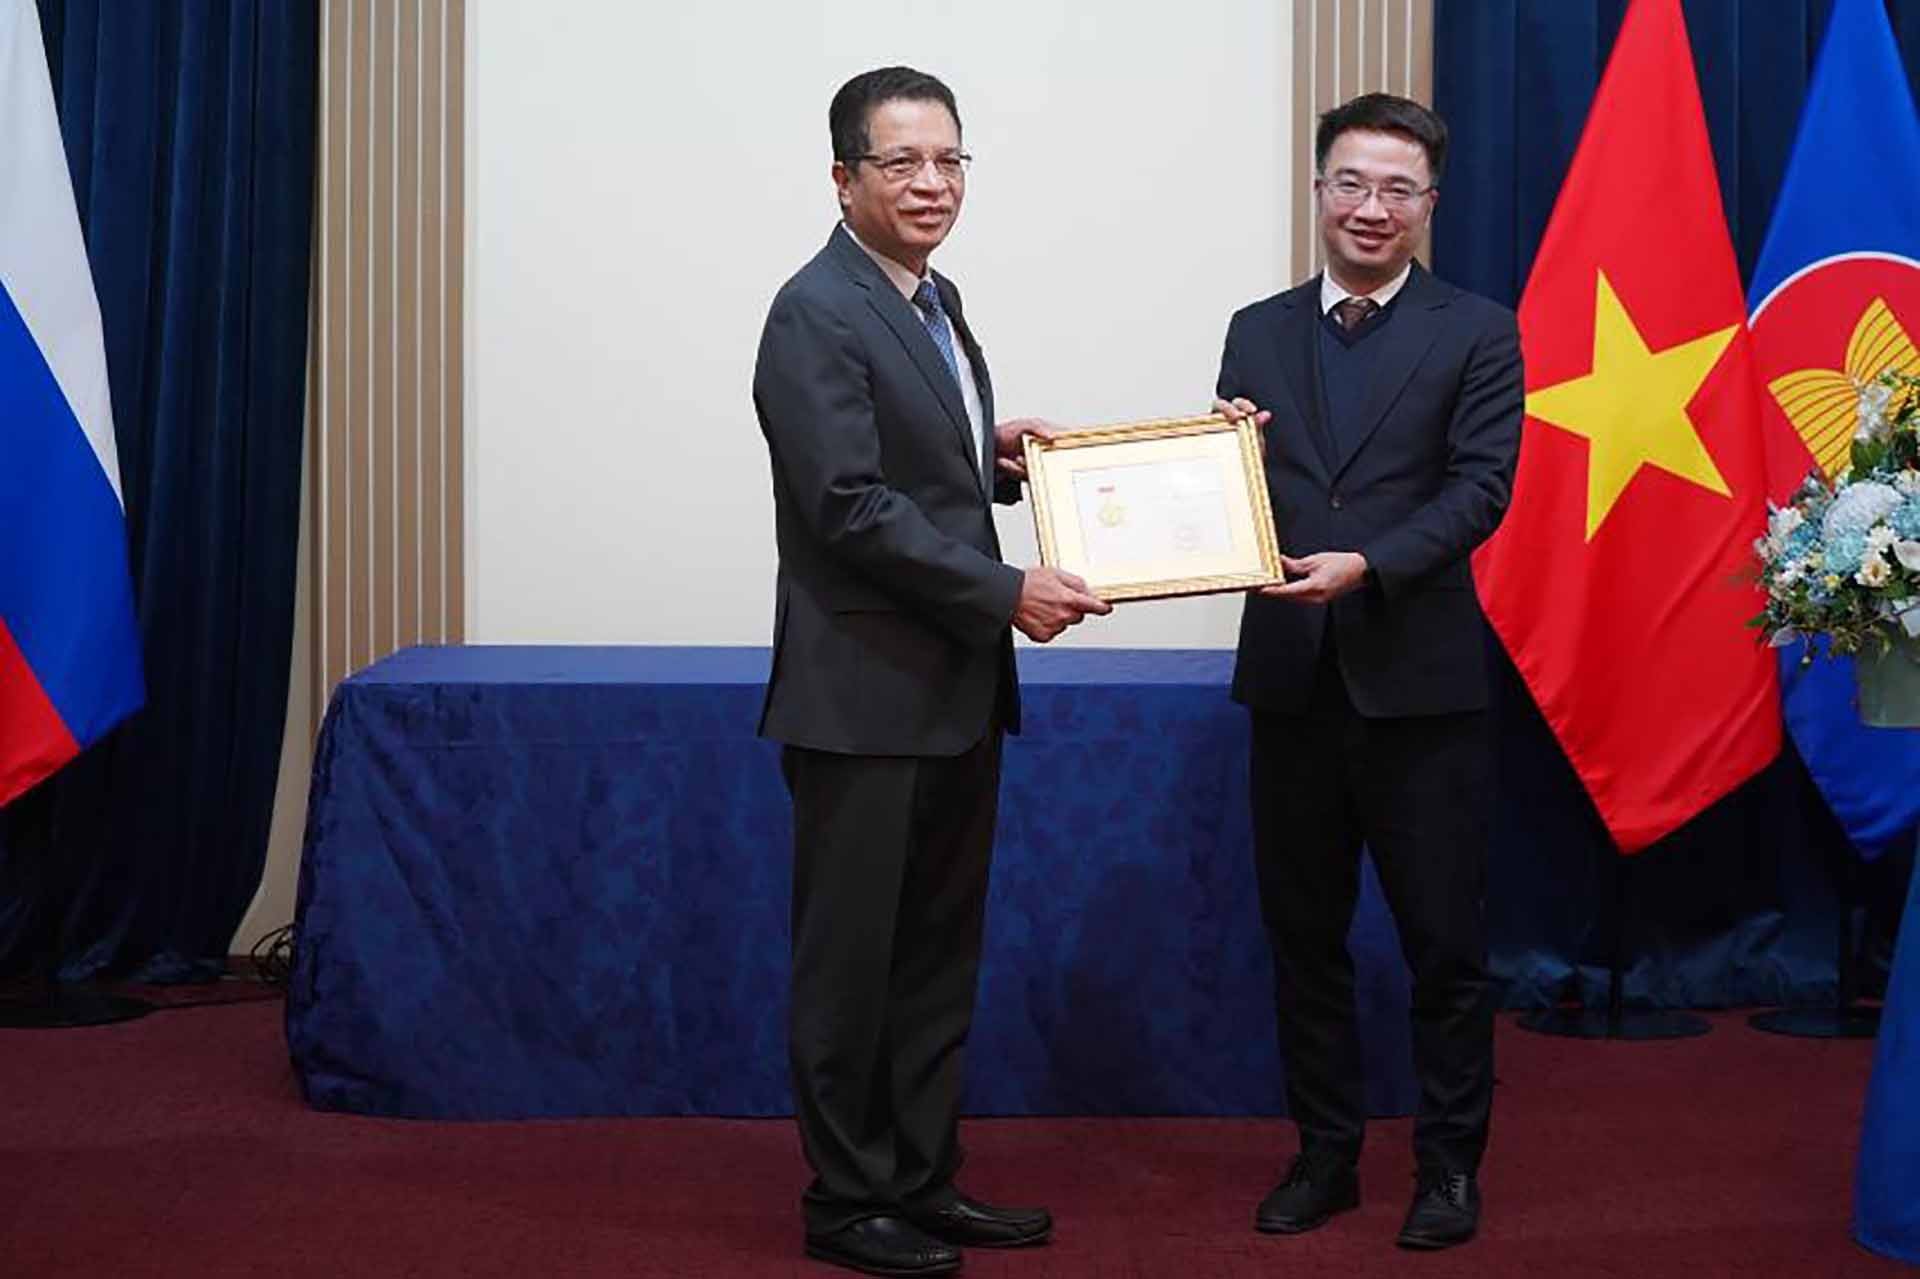 Trao kỷ niệm chương ‘Vì thế hệ trẻ’ tặng Đại sứ Việt Nam tại Nga